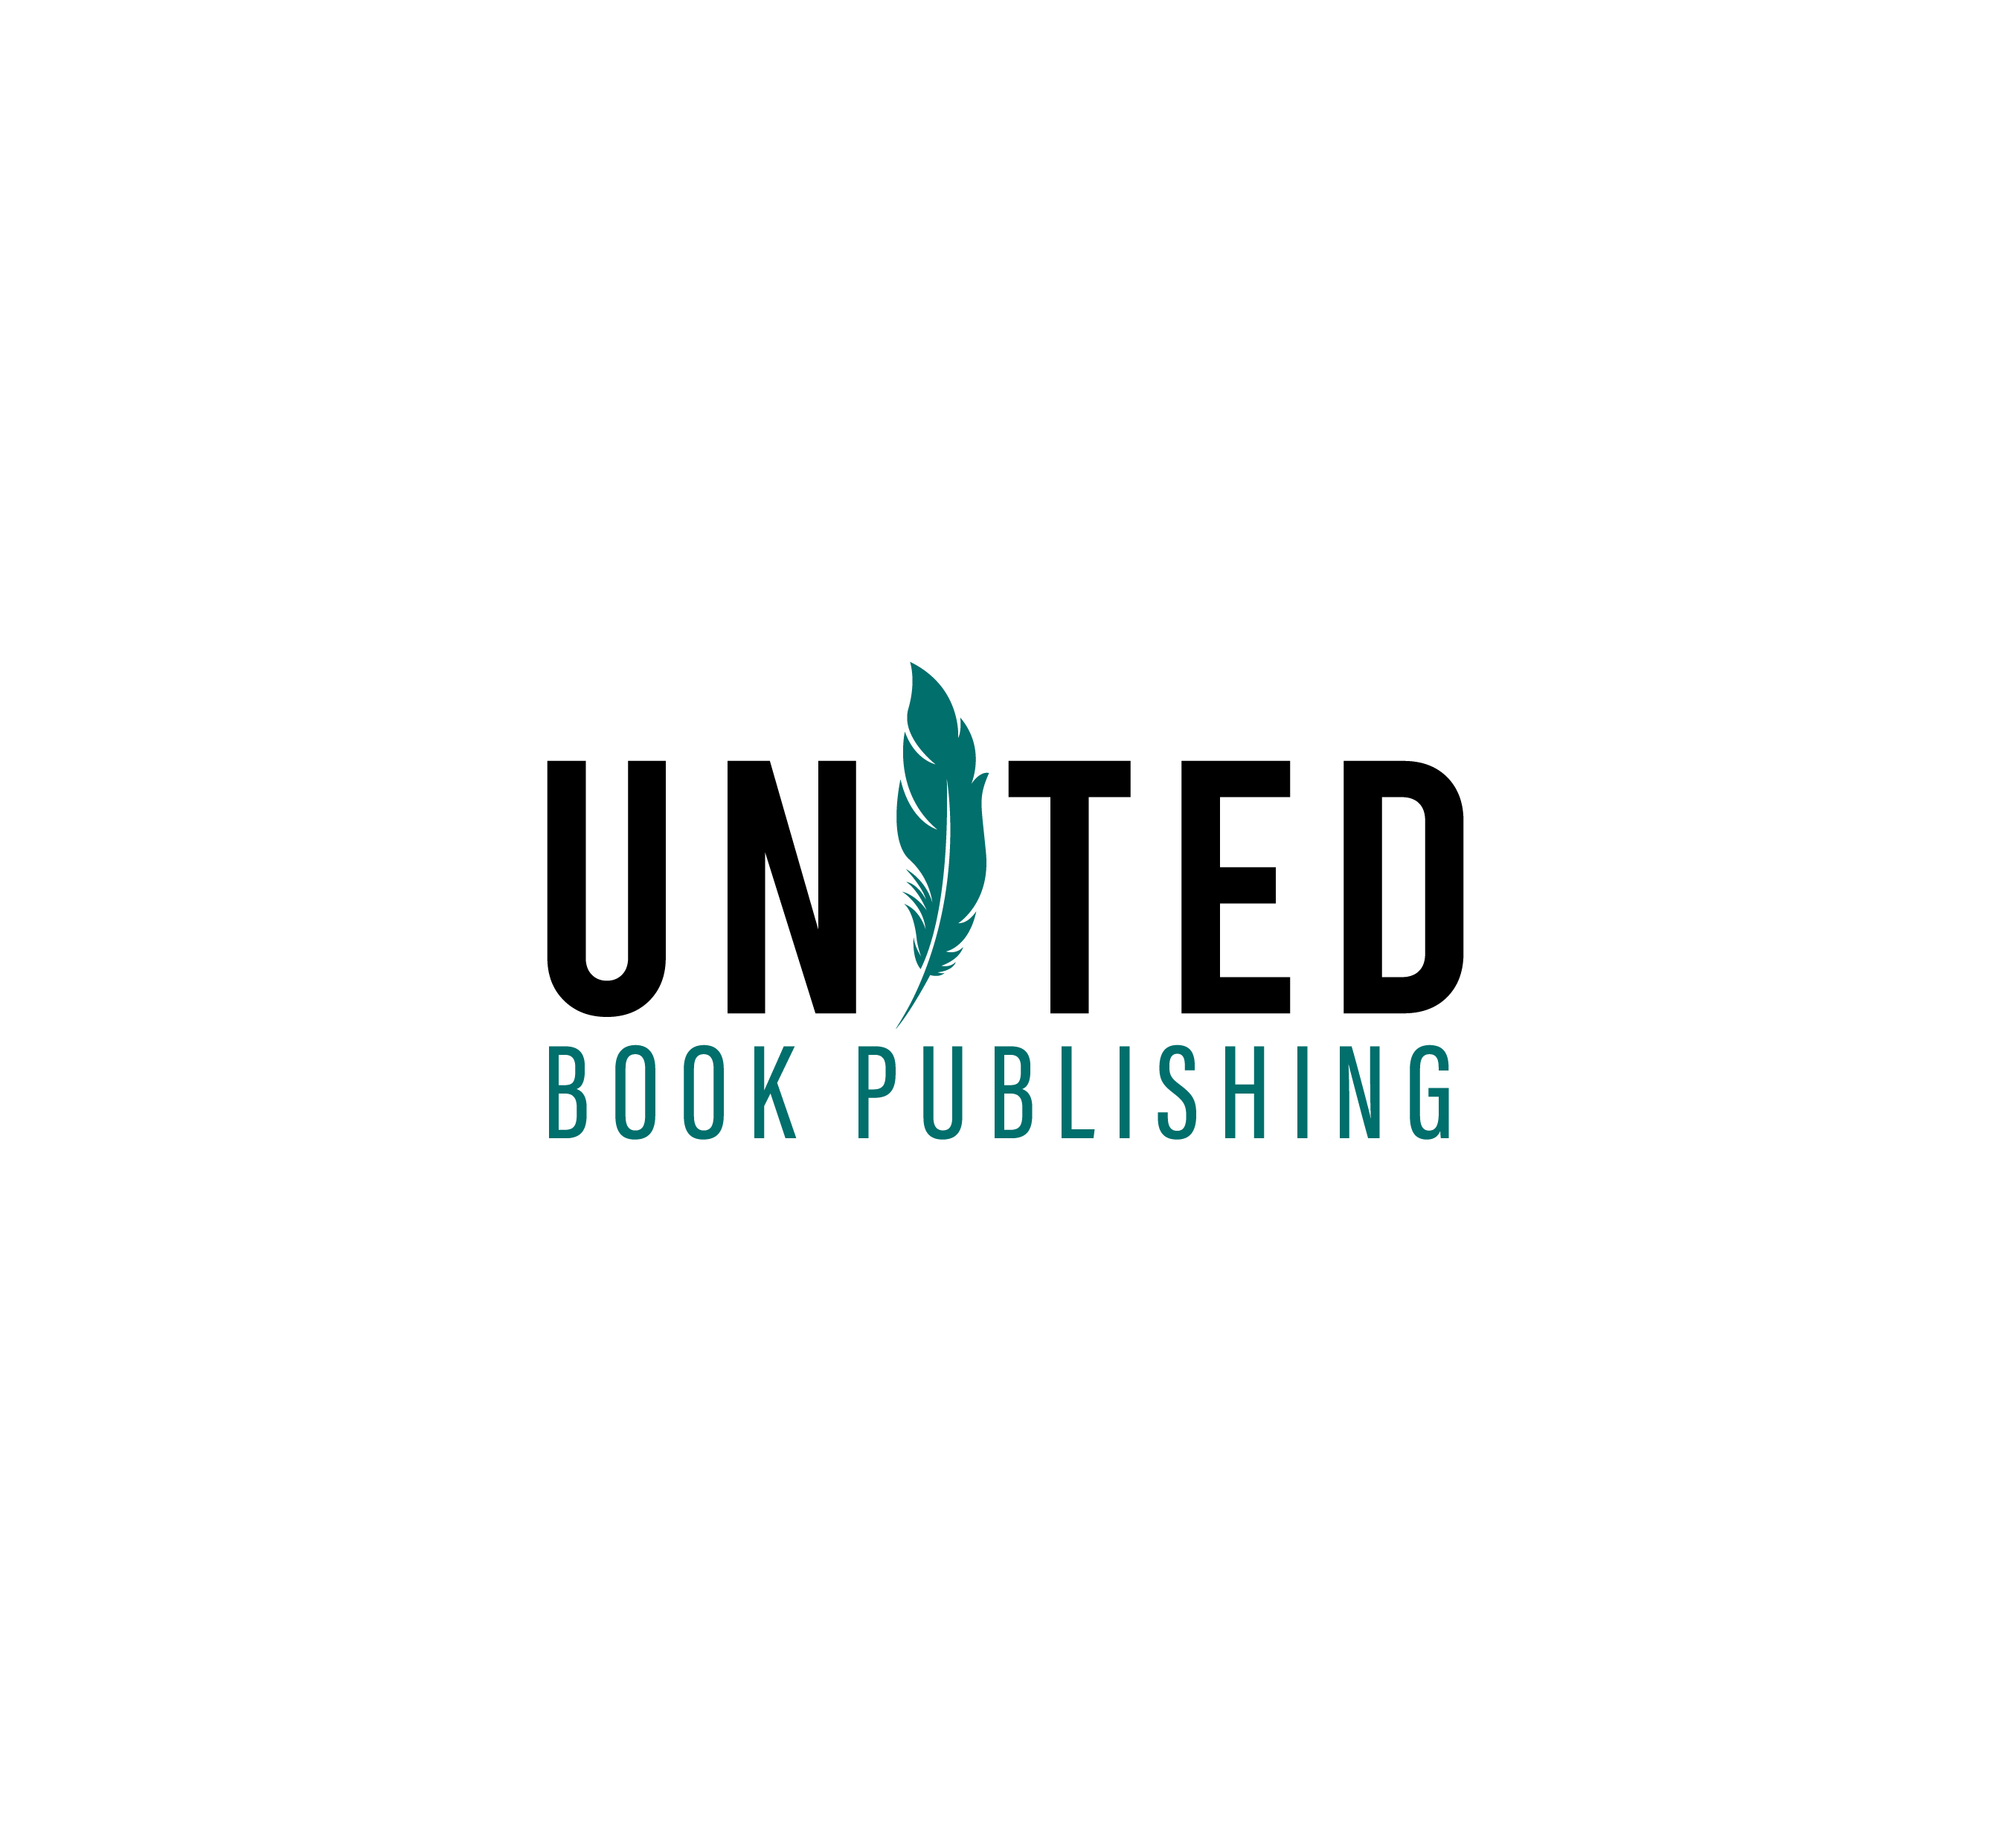 United Book Publishing